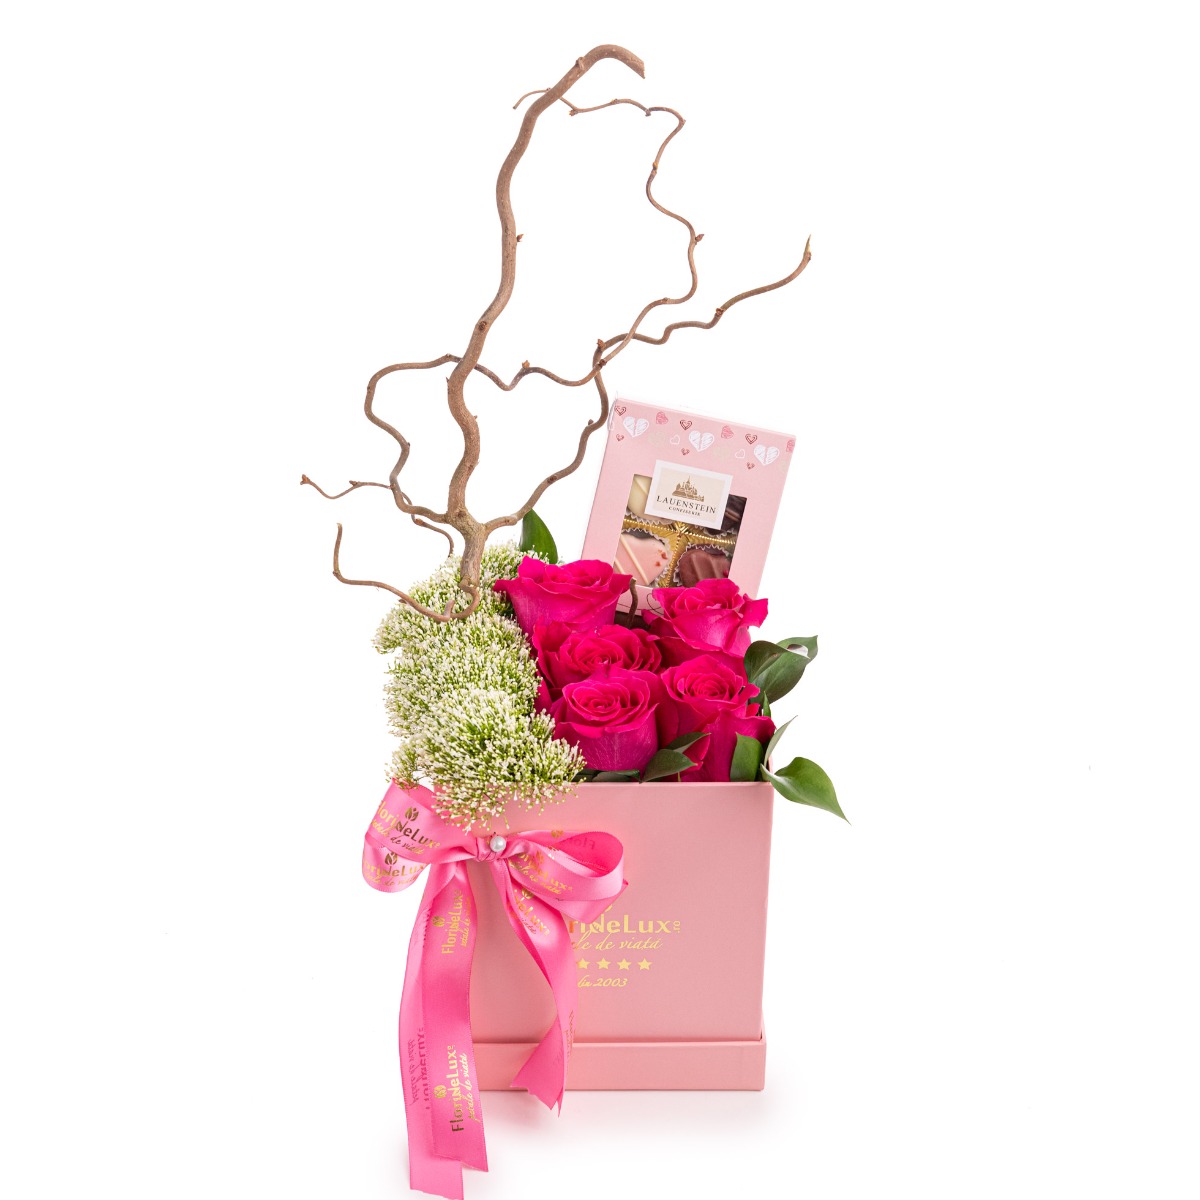 Cutie Dream Girl cu trandafiri roz si praline premium